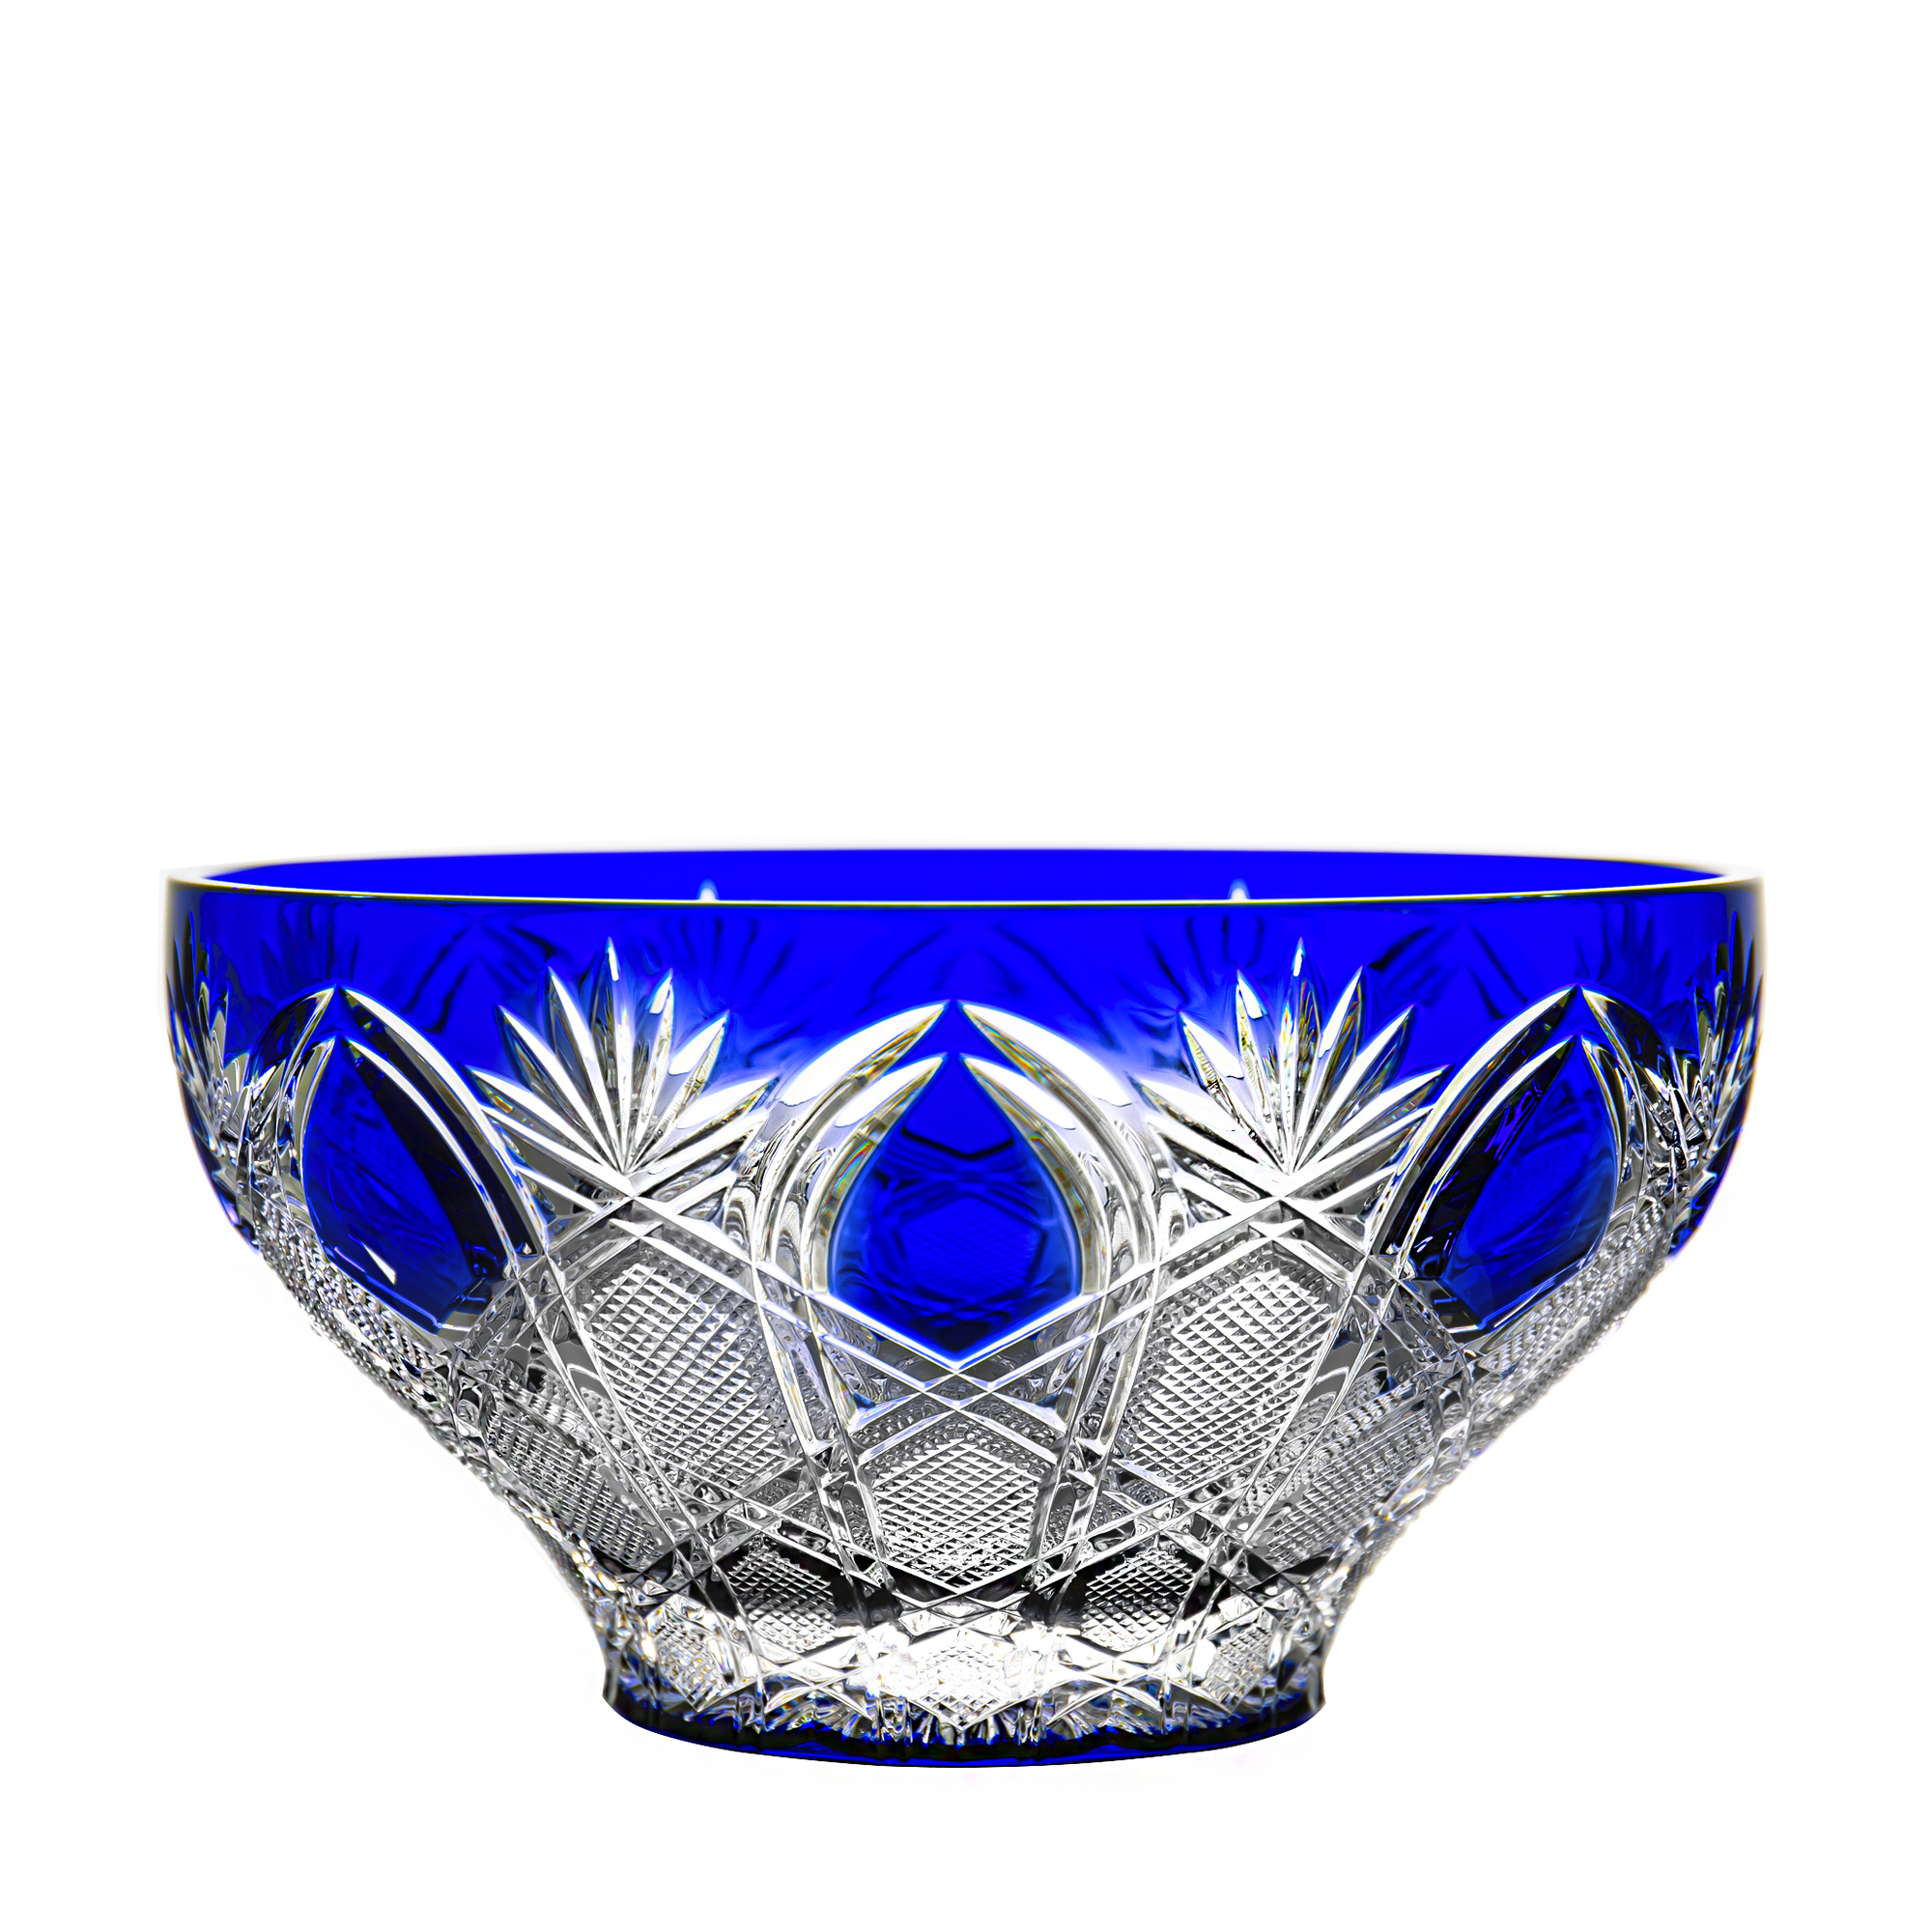 Fabergé Czar Imperial Blue Bowl 9.1 in